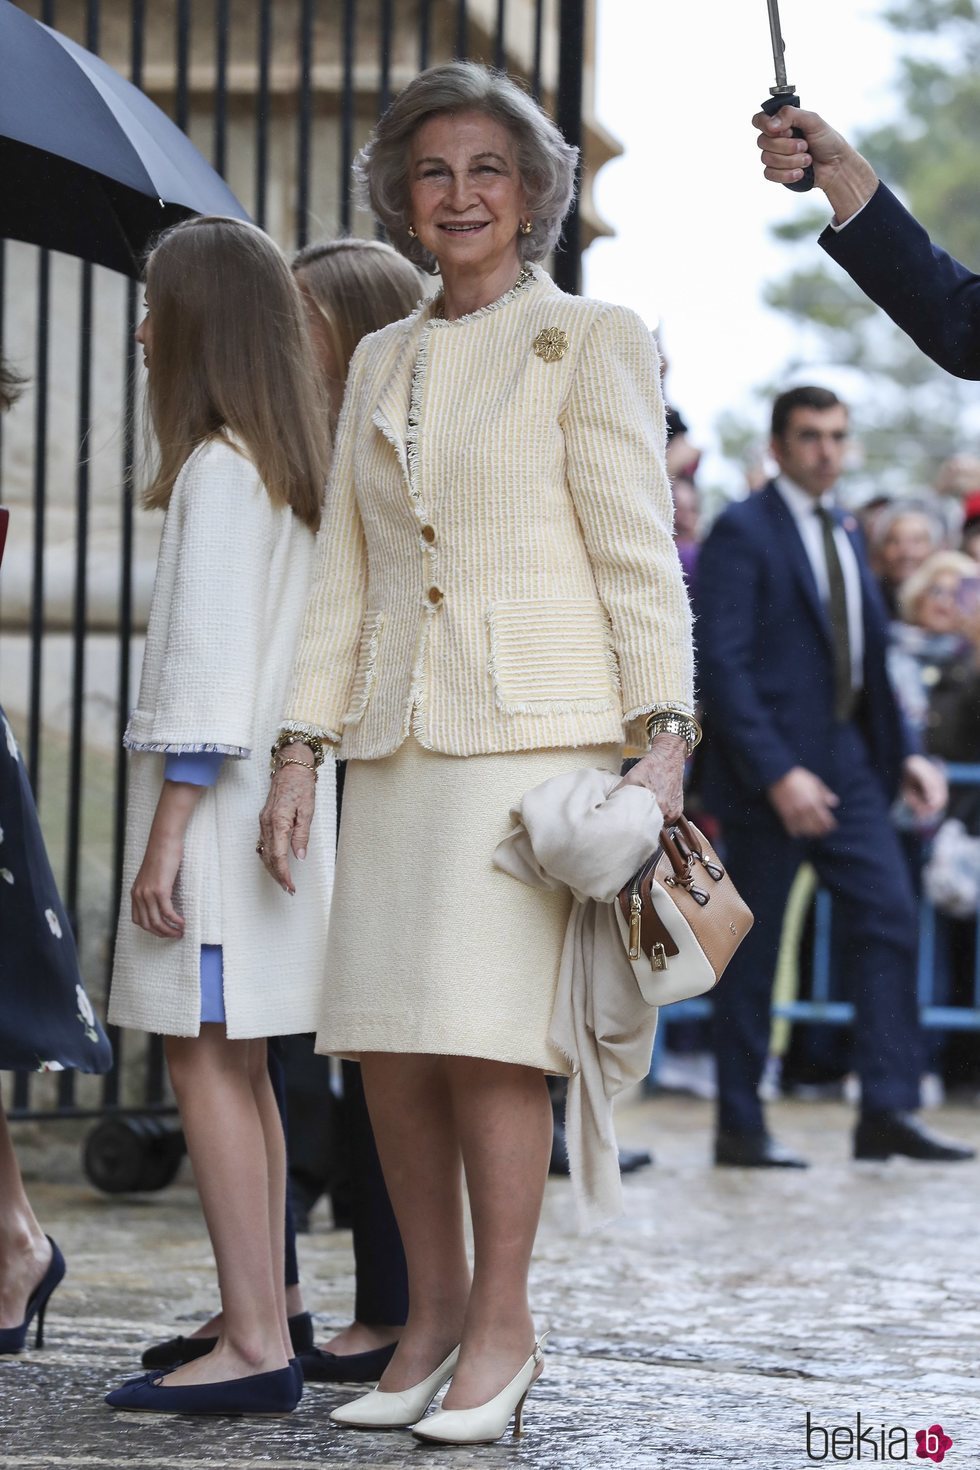 La Reina Sofía con traje de chaqueta y la Princesa Leonor con vestido en la Misa de Pascua 2019